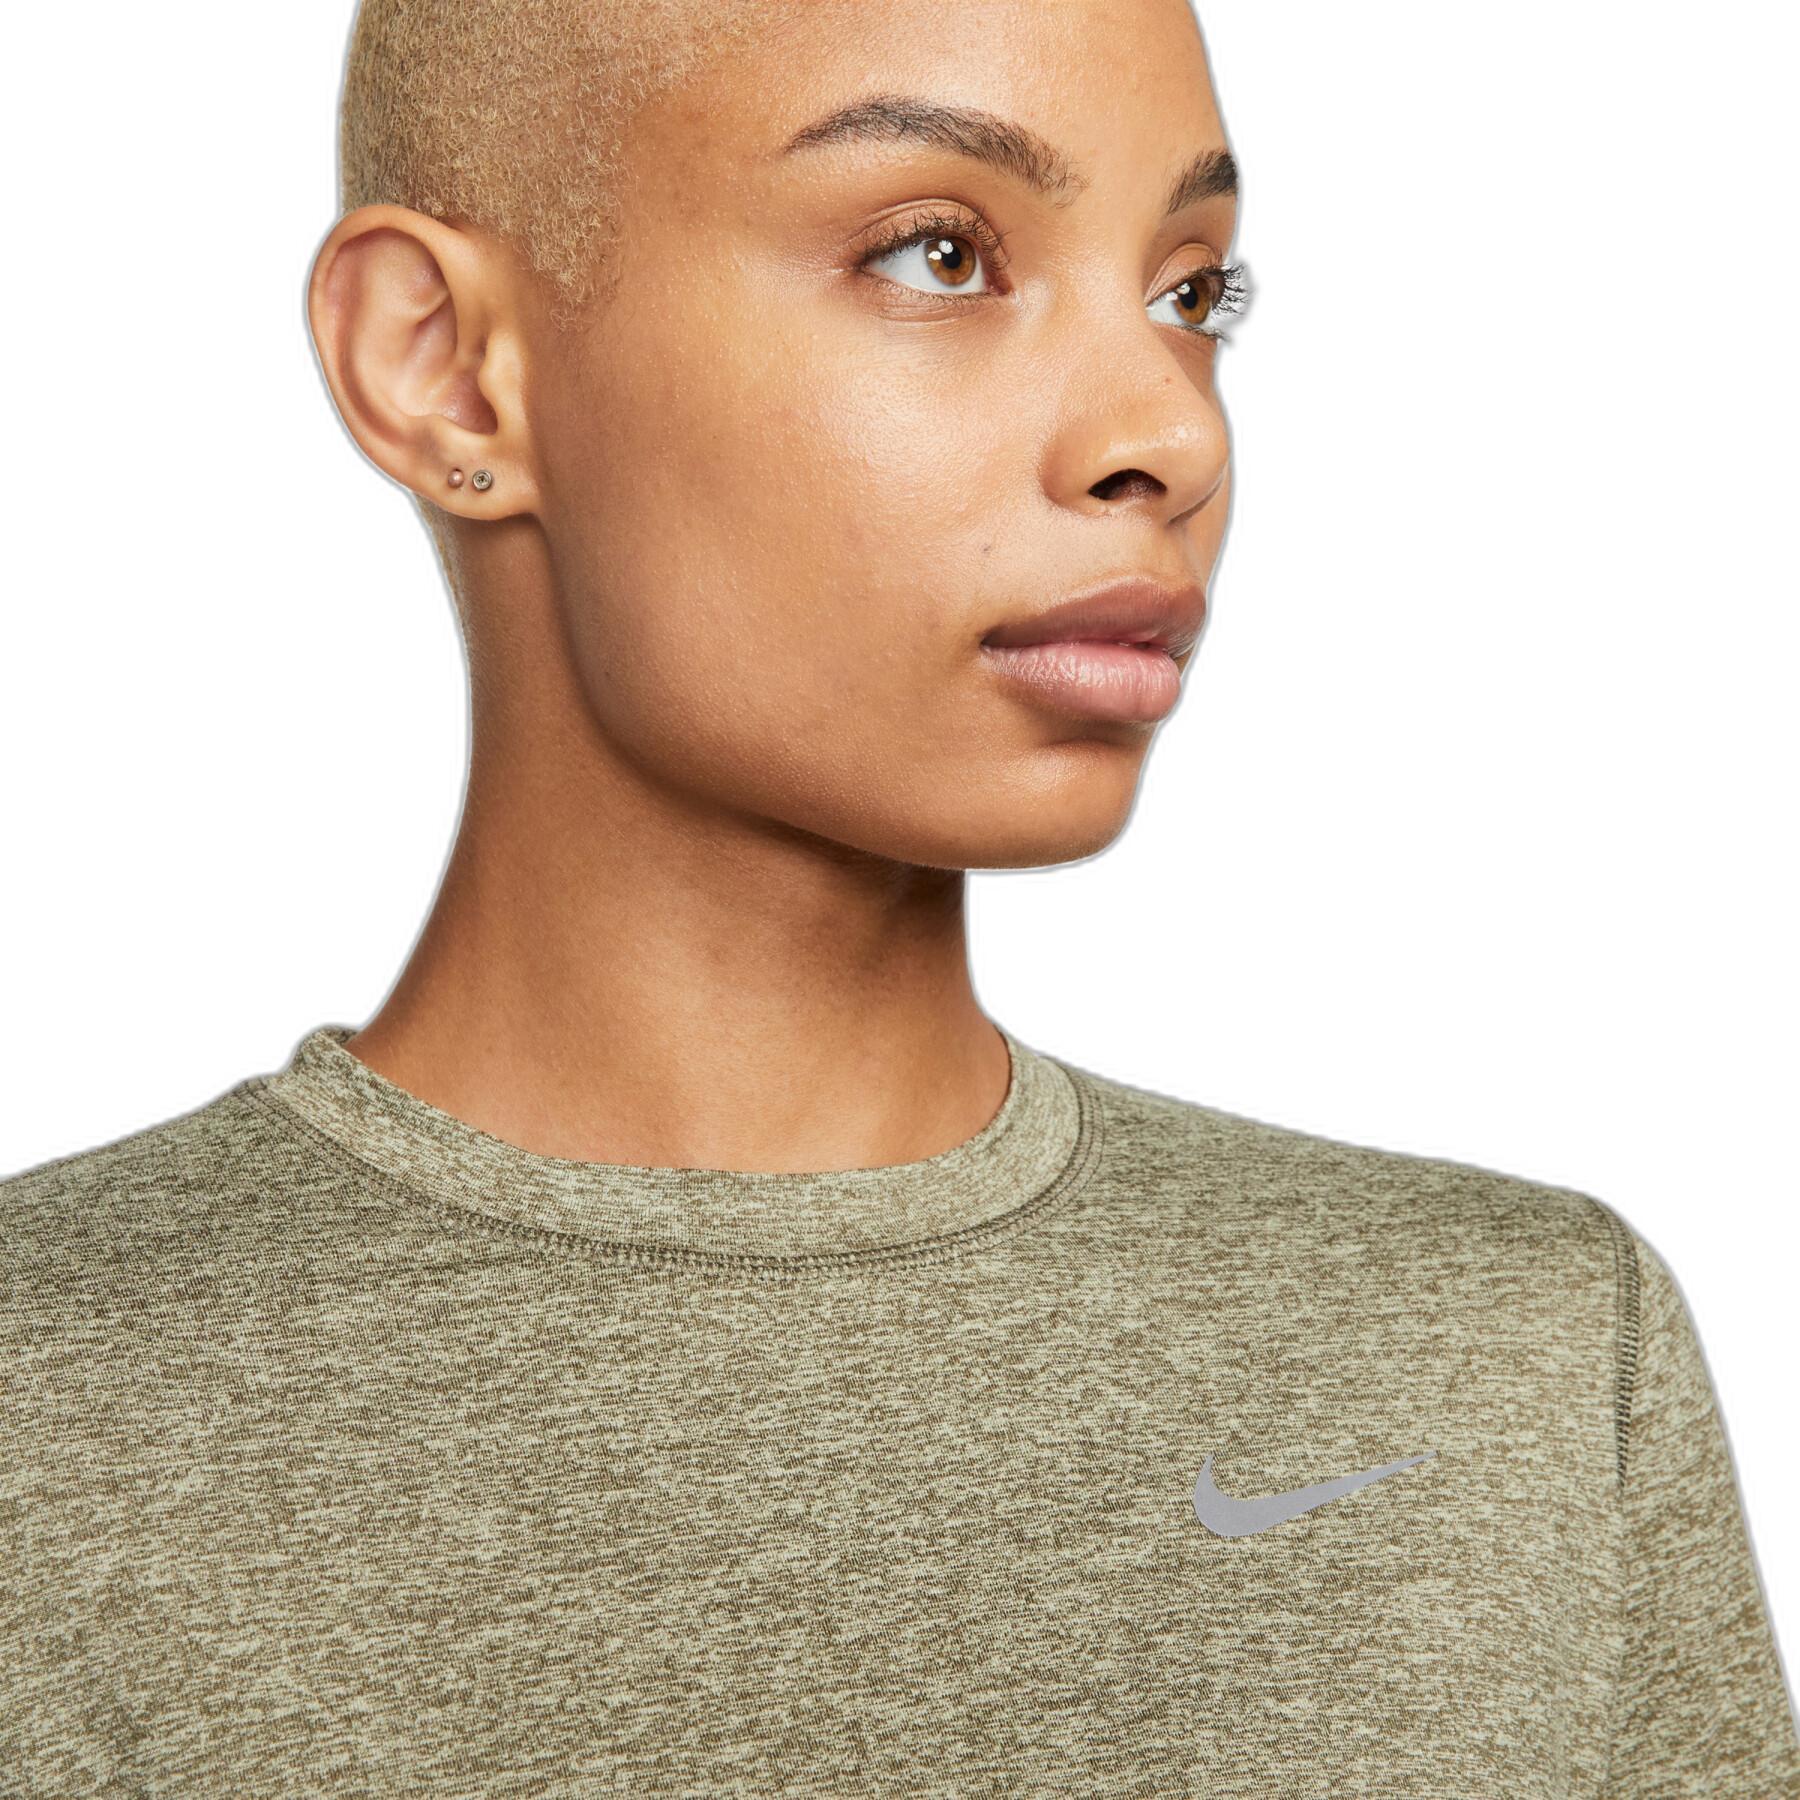 Camiseta de manga larga para mujer Nike